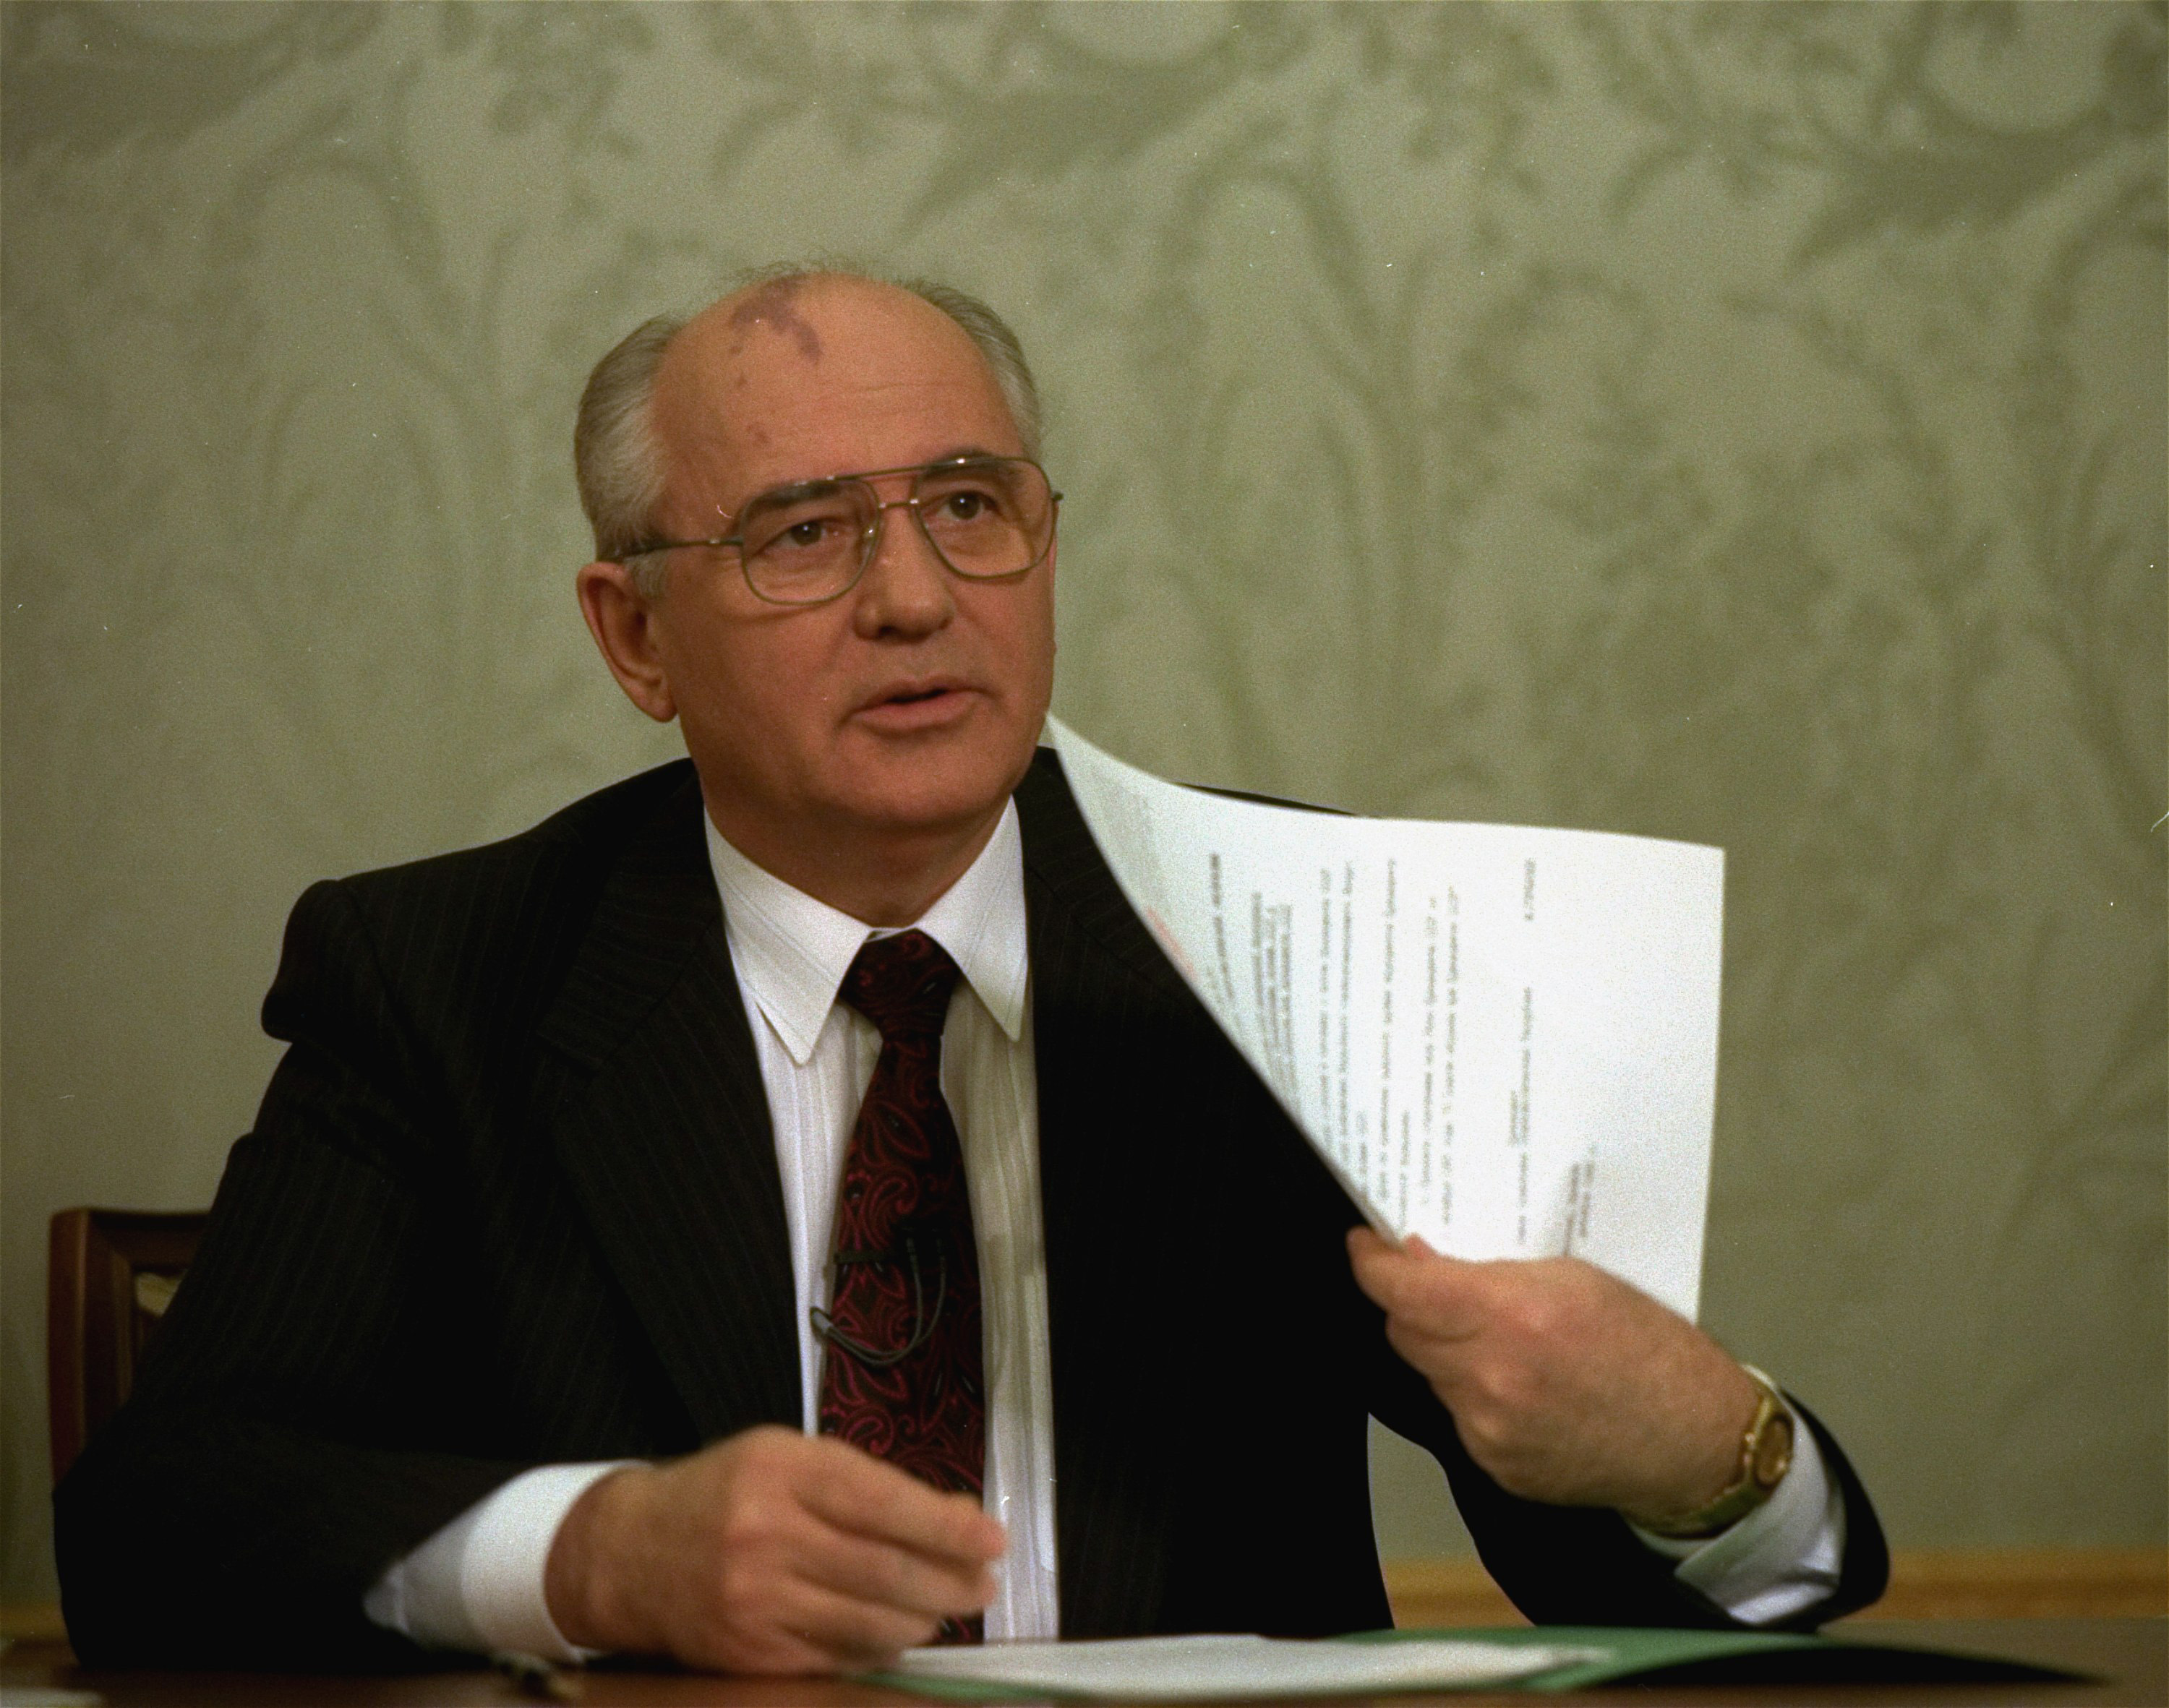 Mikhail Gorbachov muestra el decreto que renuncia al control de las armas nucleares al presidente ruso Boris Yeltsin después de su firma en el Kremlin en Moscú el 25 de diciembre de 1991, trazando una línea en más de 74 años de historia soviética. Sin embargo, para el otoño de 1991, los problemas económicos cada vez más profundos y las ofertas secesionistas de las repúblicas soviéticas habían hecho que el colapso fuera casi inevitable. El golpe fallido de agosto de 1991 por parte de la vieja guardia comunista fue un catalizador importante, que erosionó drásticamente la autoridad de Gorbachov y alentó a más repúblicas a buscar la independencia (AP Photo/Liu Heung Shing, File)